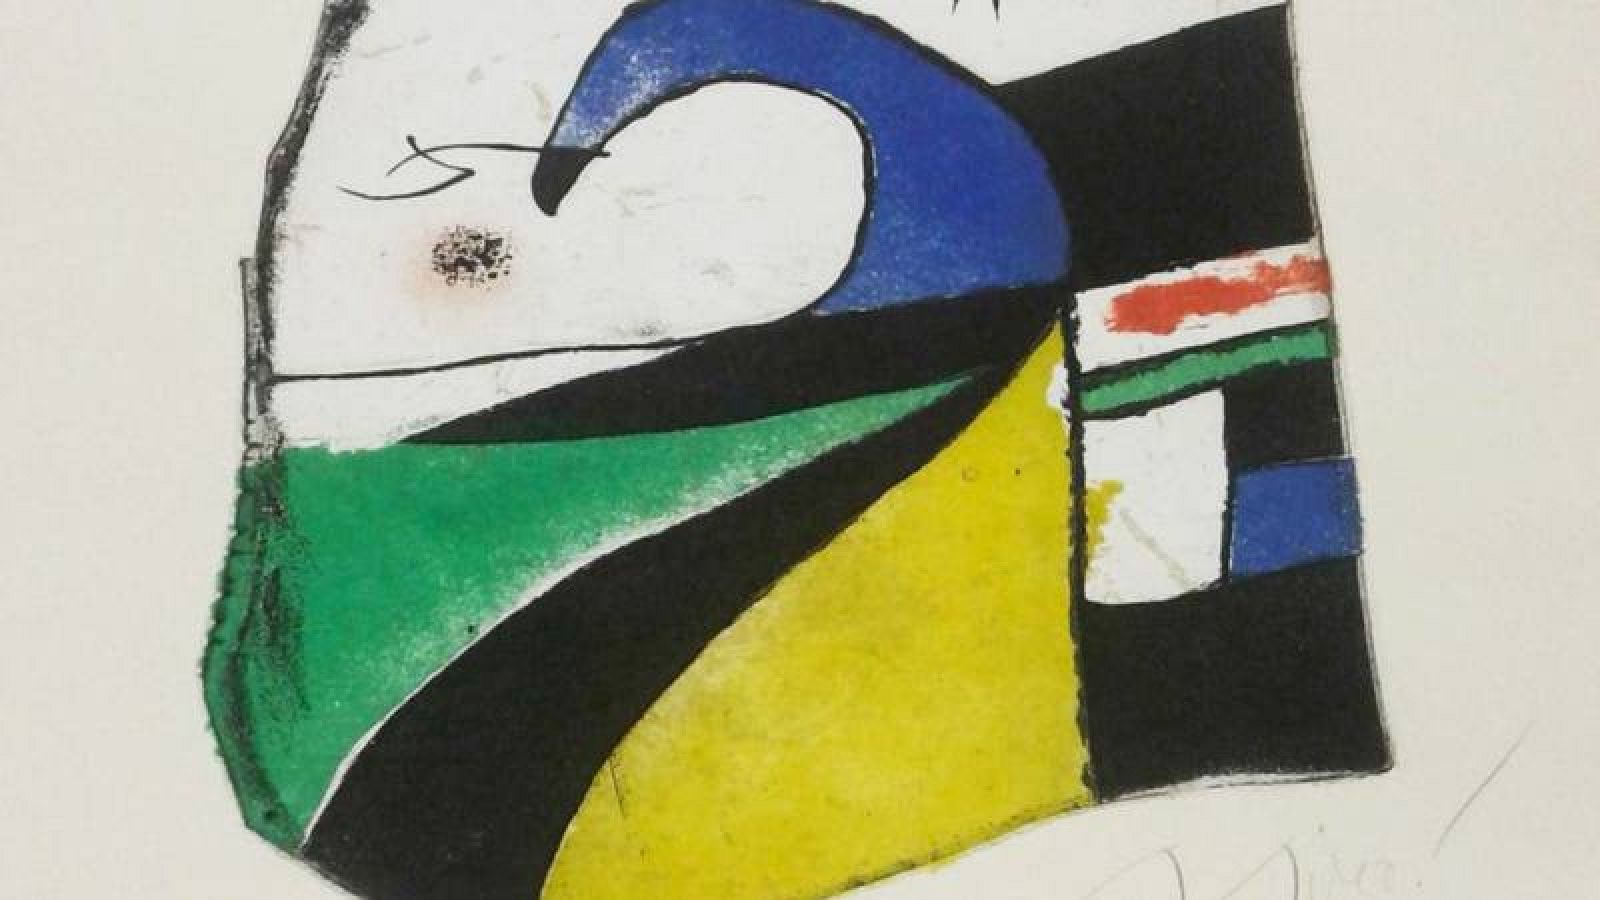 Grabado de Joan Miró valorado en 10.000 euros, desaparecido y hallado en una casa de subastas en Londres 